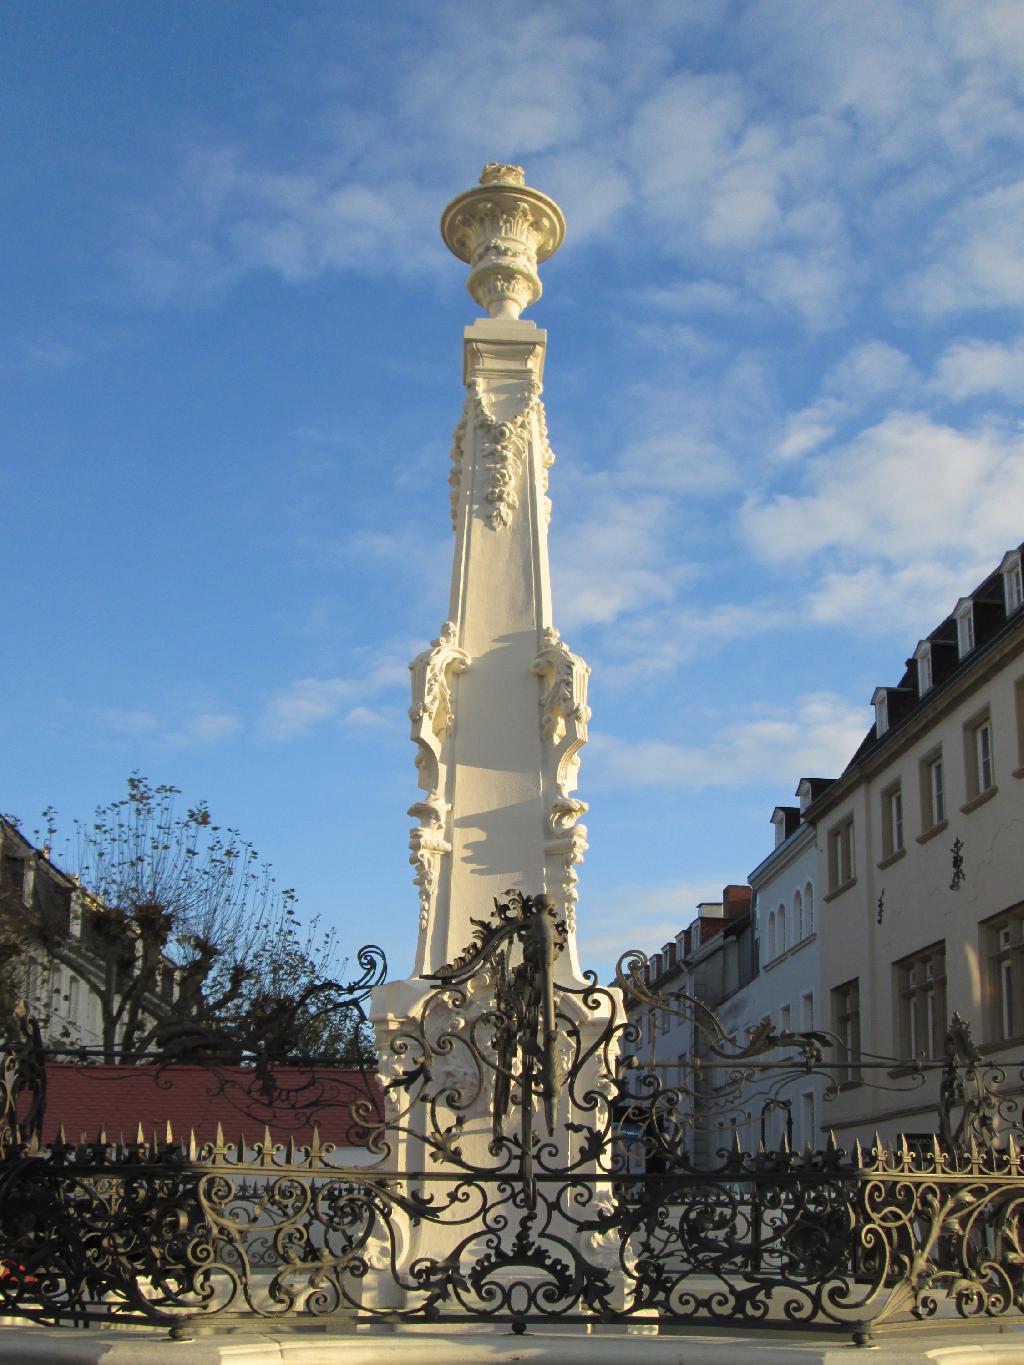 St. Johanner Marktbrunnen